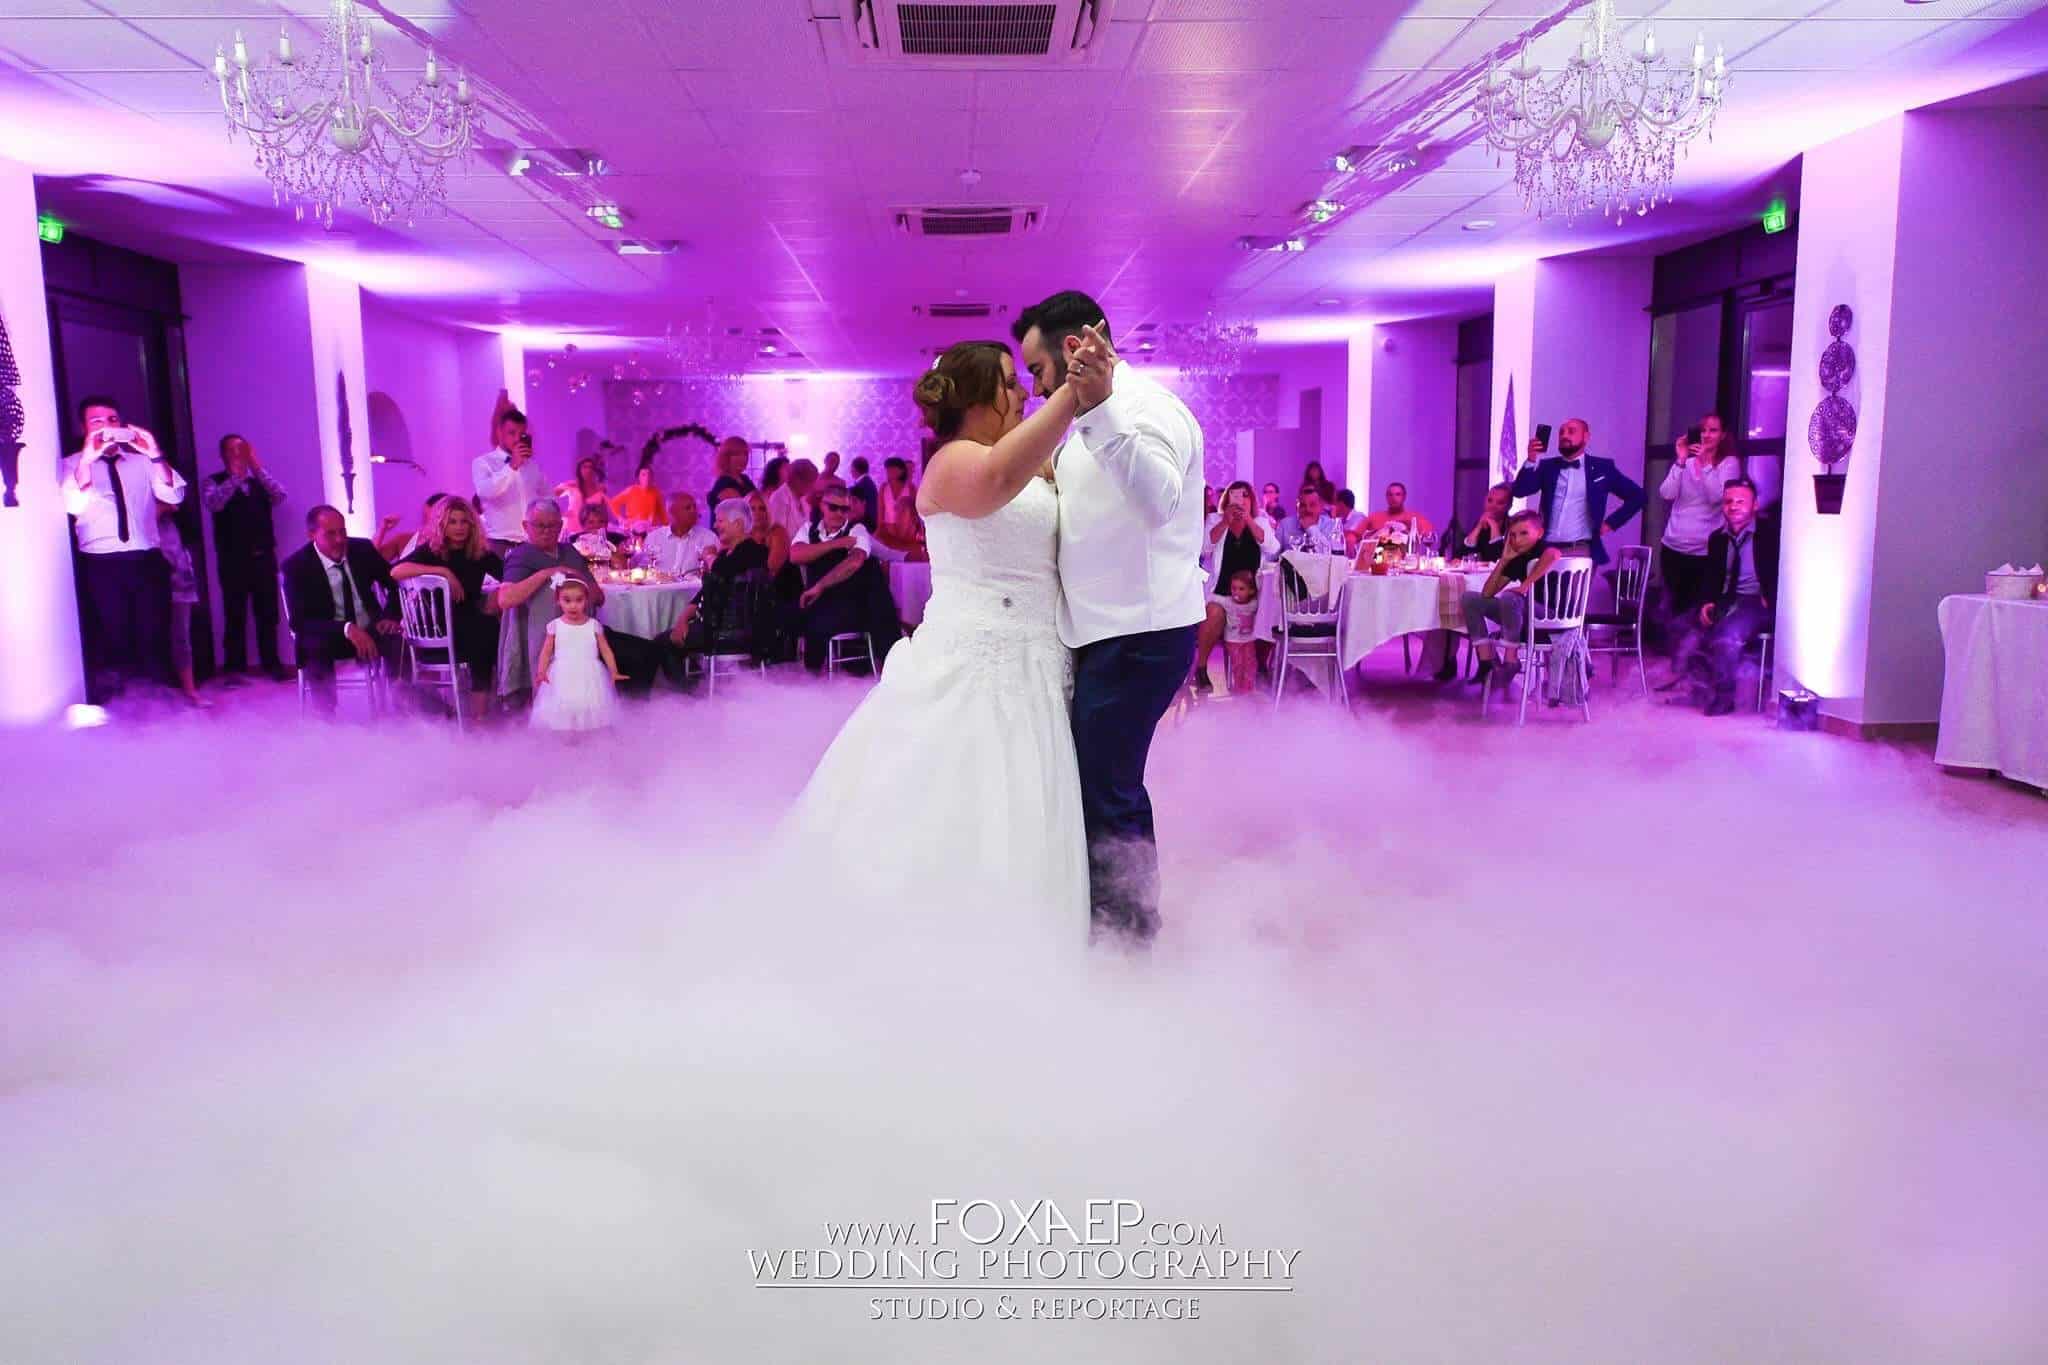 Fumigène Mariage : les meilleurs fumigènes pour mariés